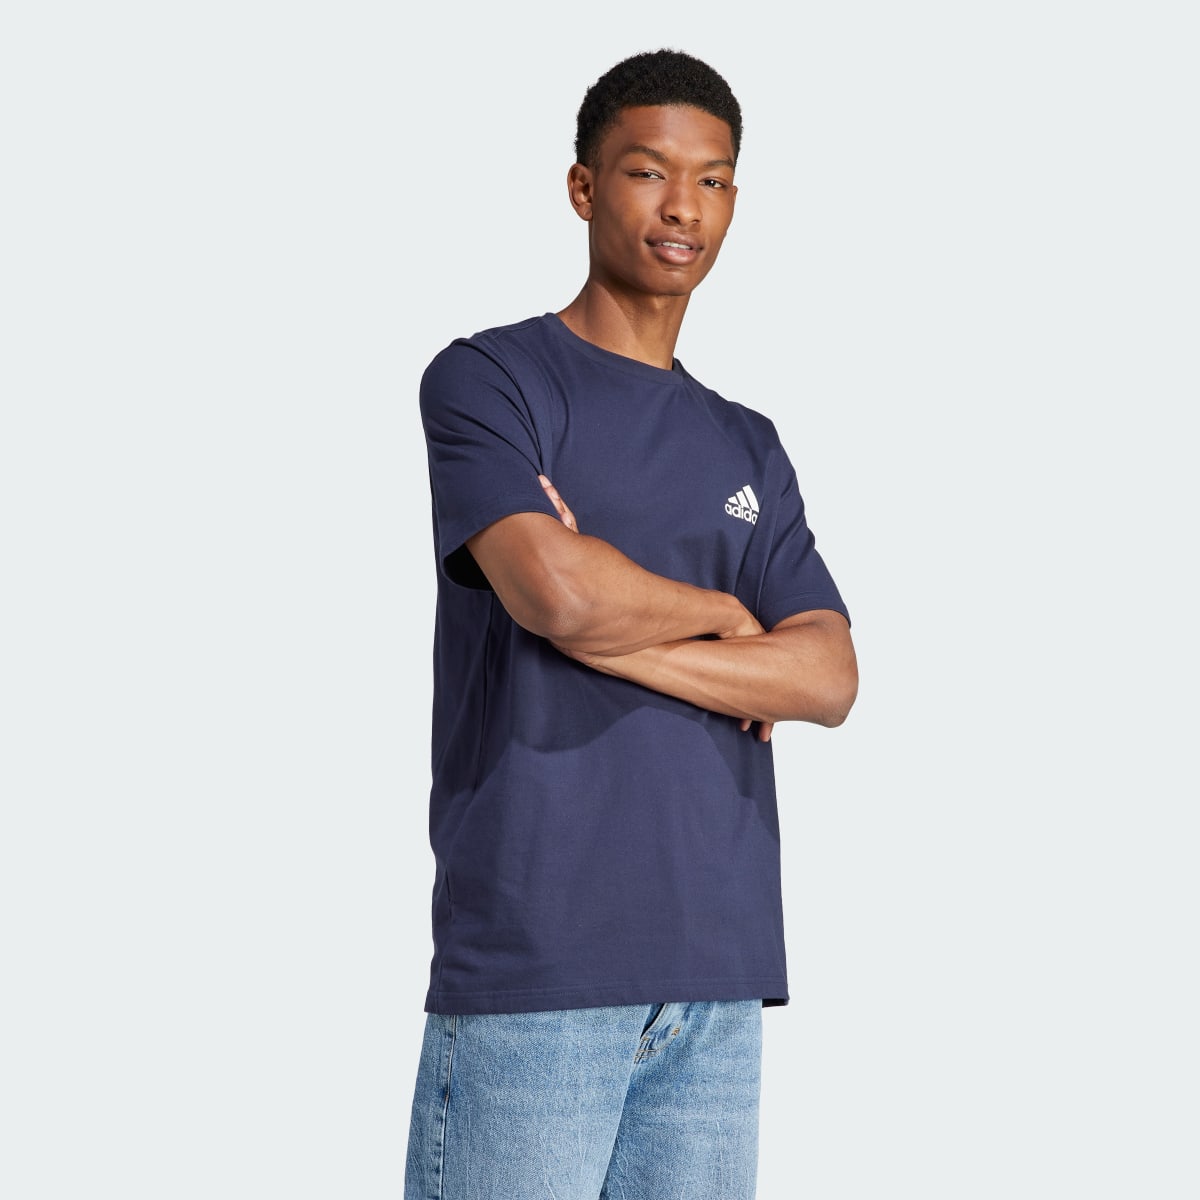 Adidas Tiro Wordmark Graphic T-Shirt. 5